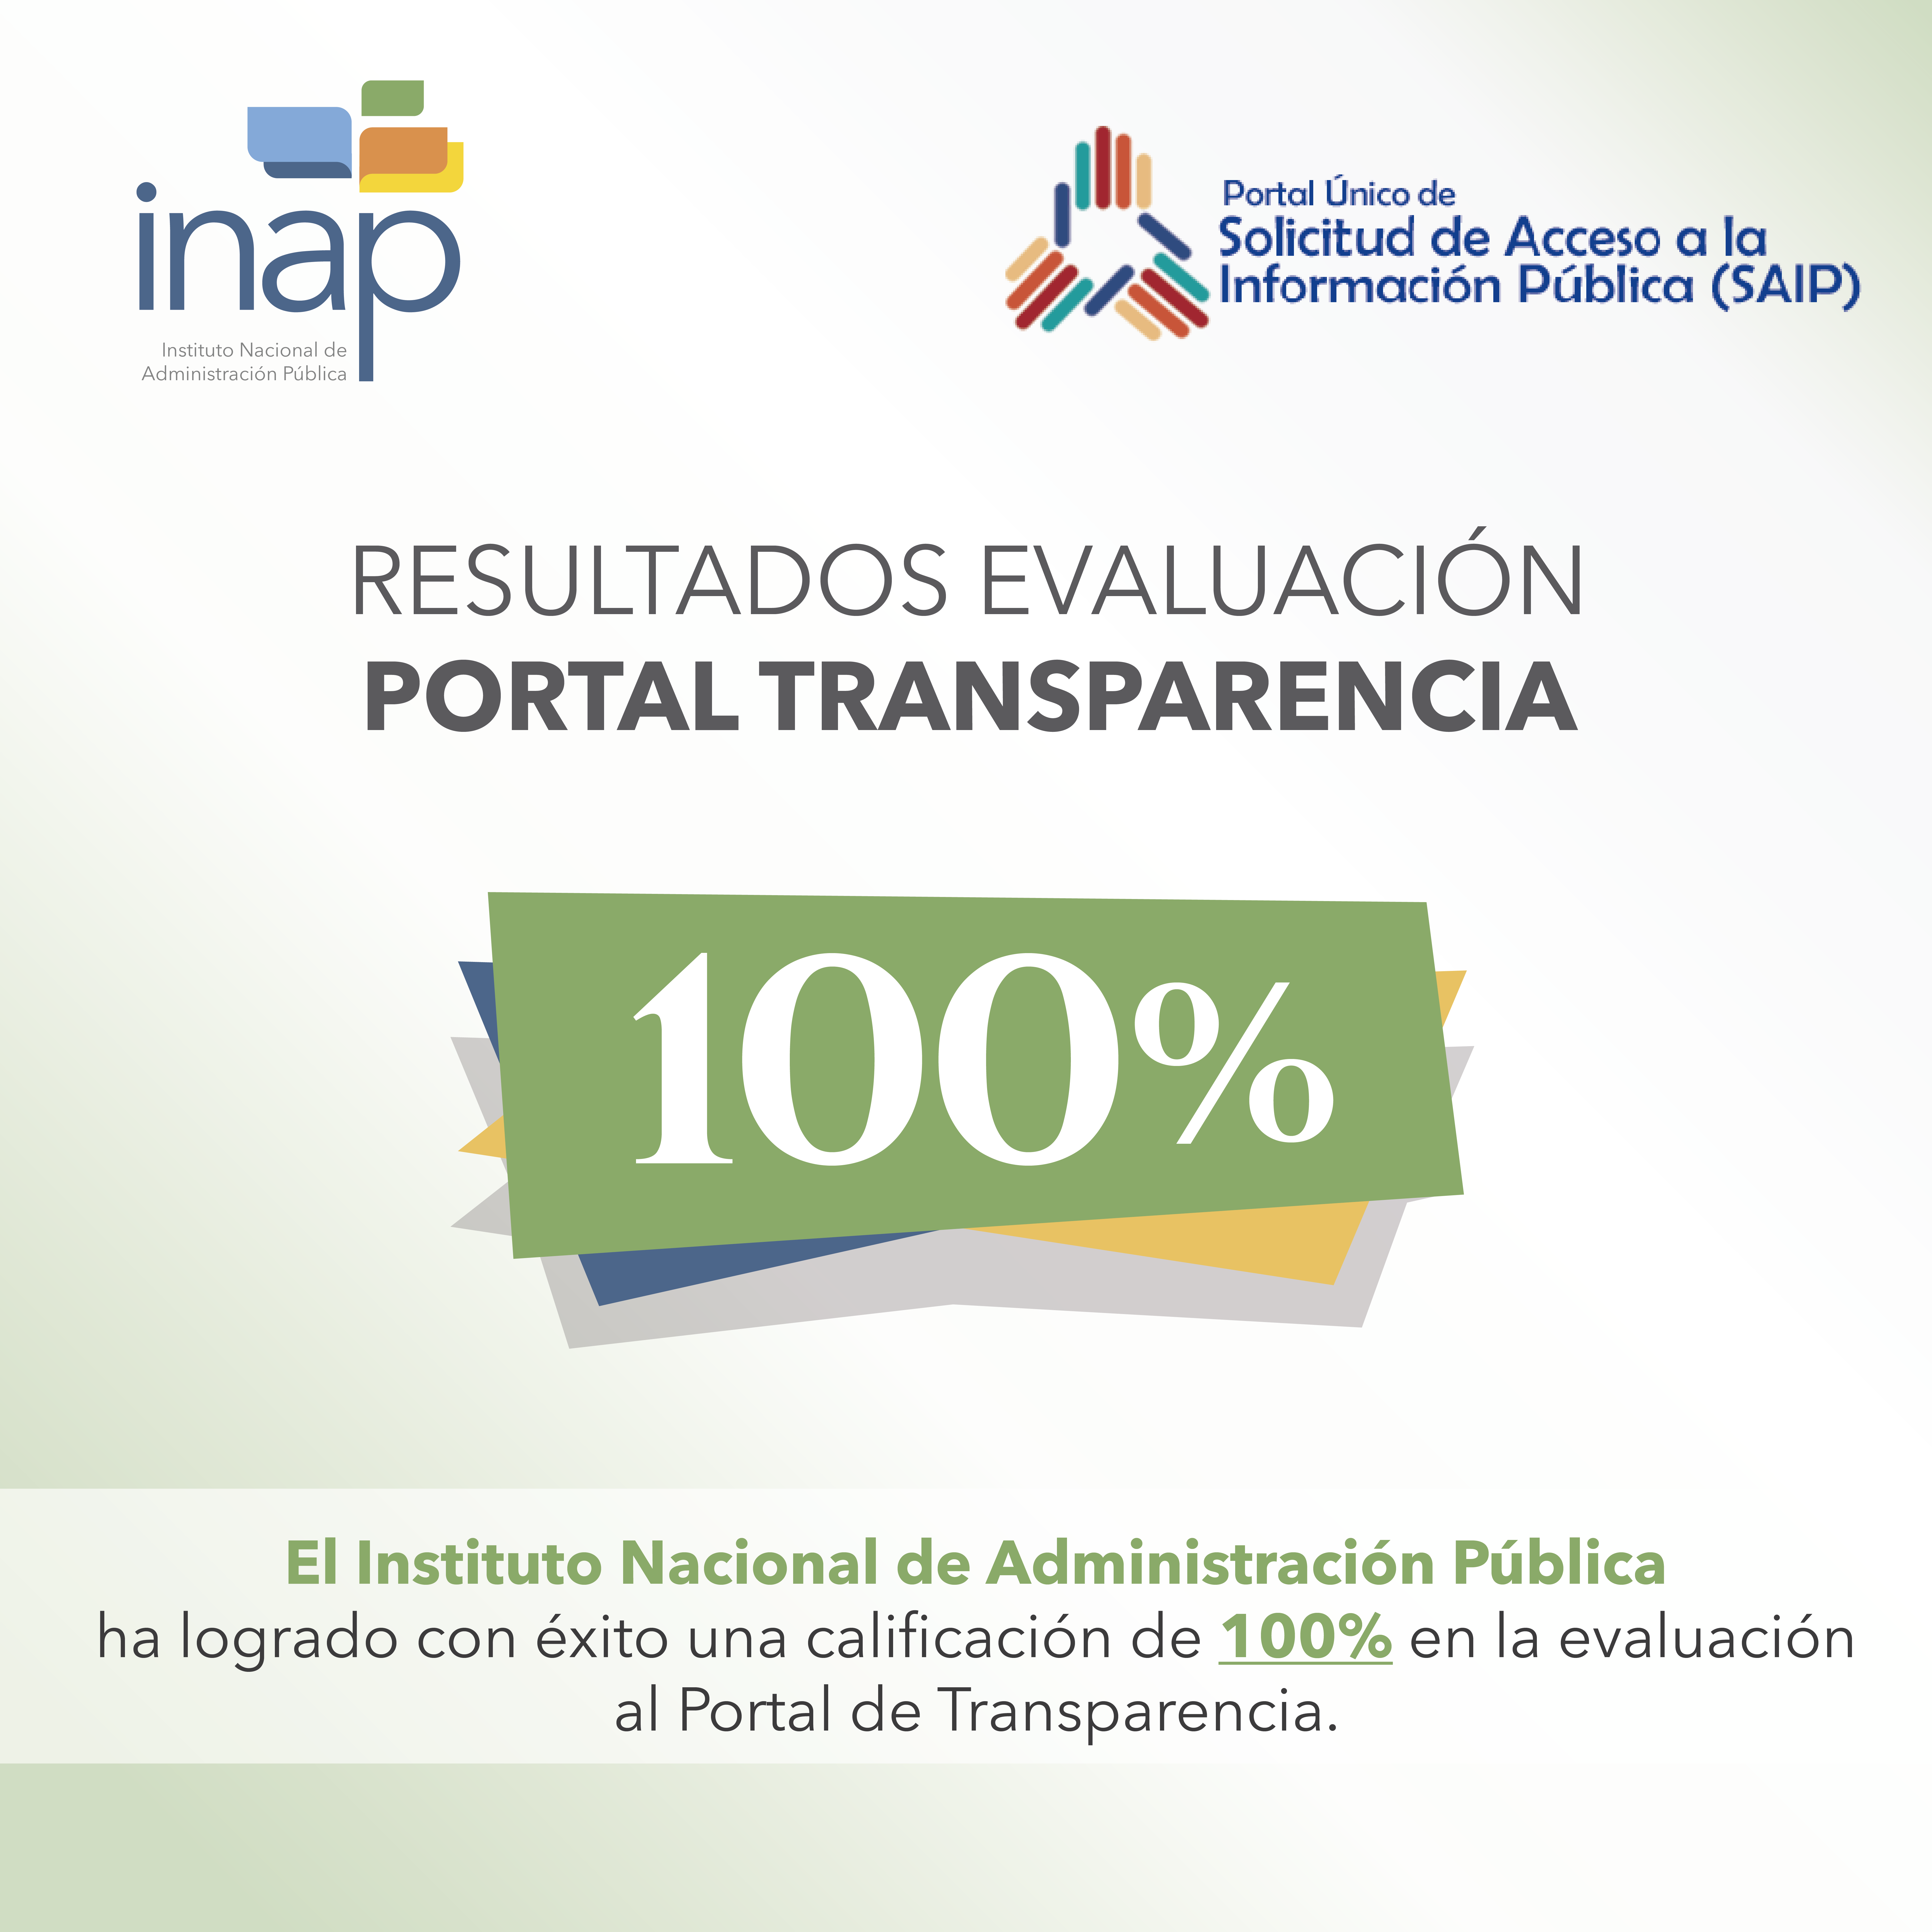  El Instituto Nacional de Administración Pública (INAP) por tercer mes consecutivo, logra la más alta calificación en su portal de transparencia